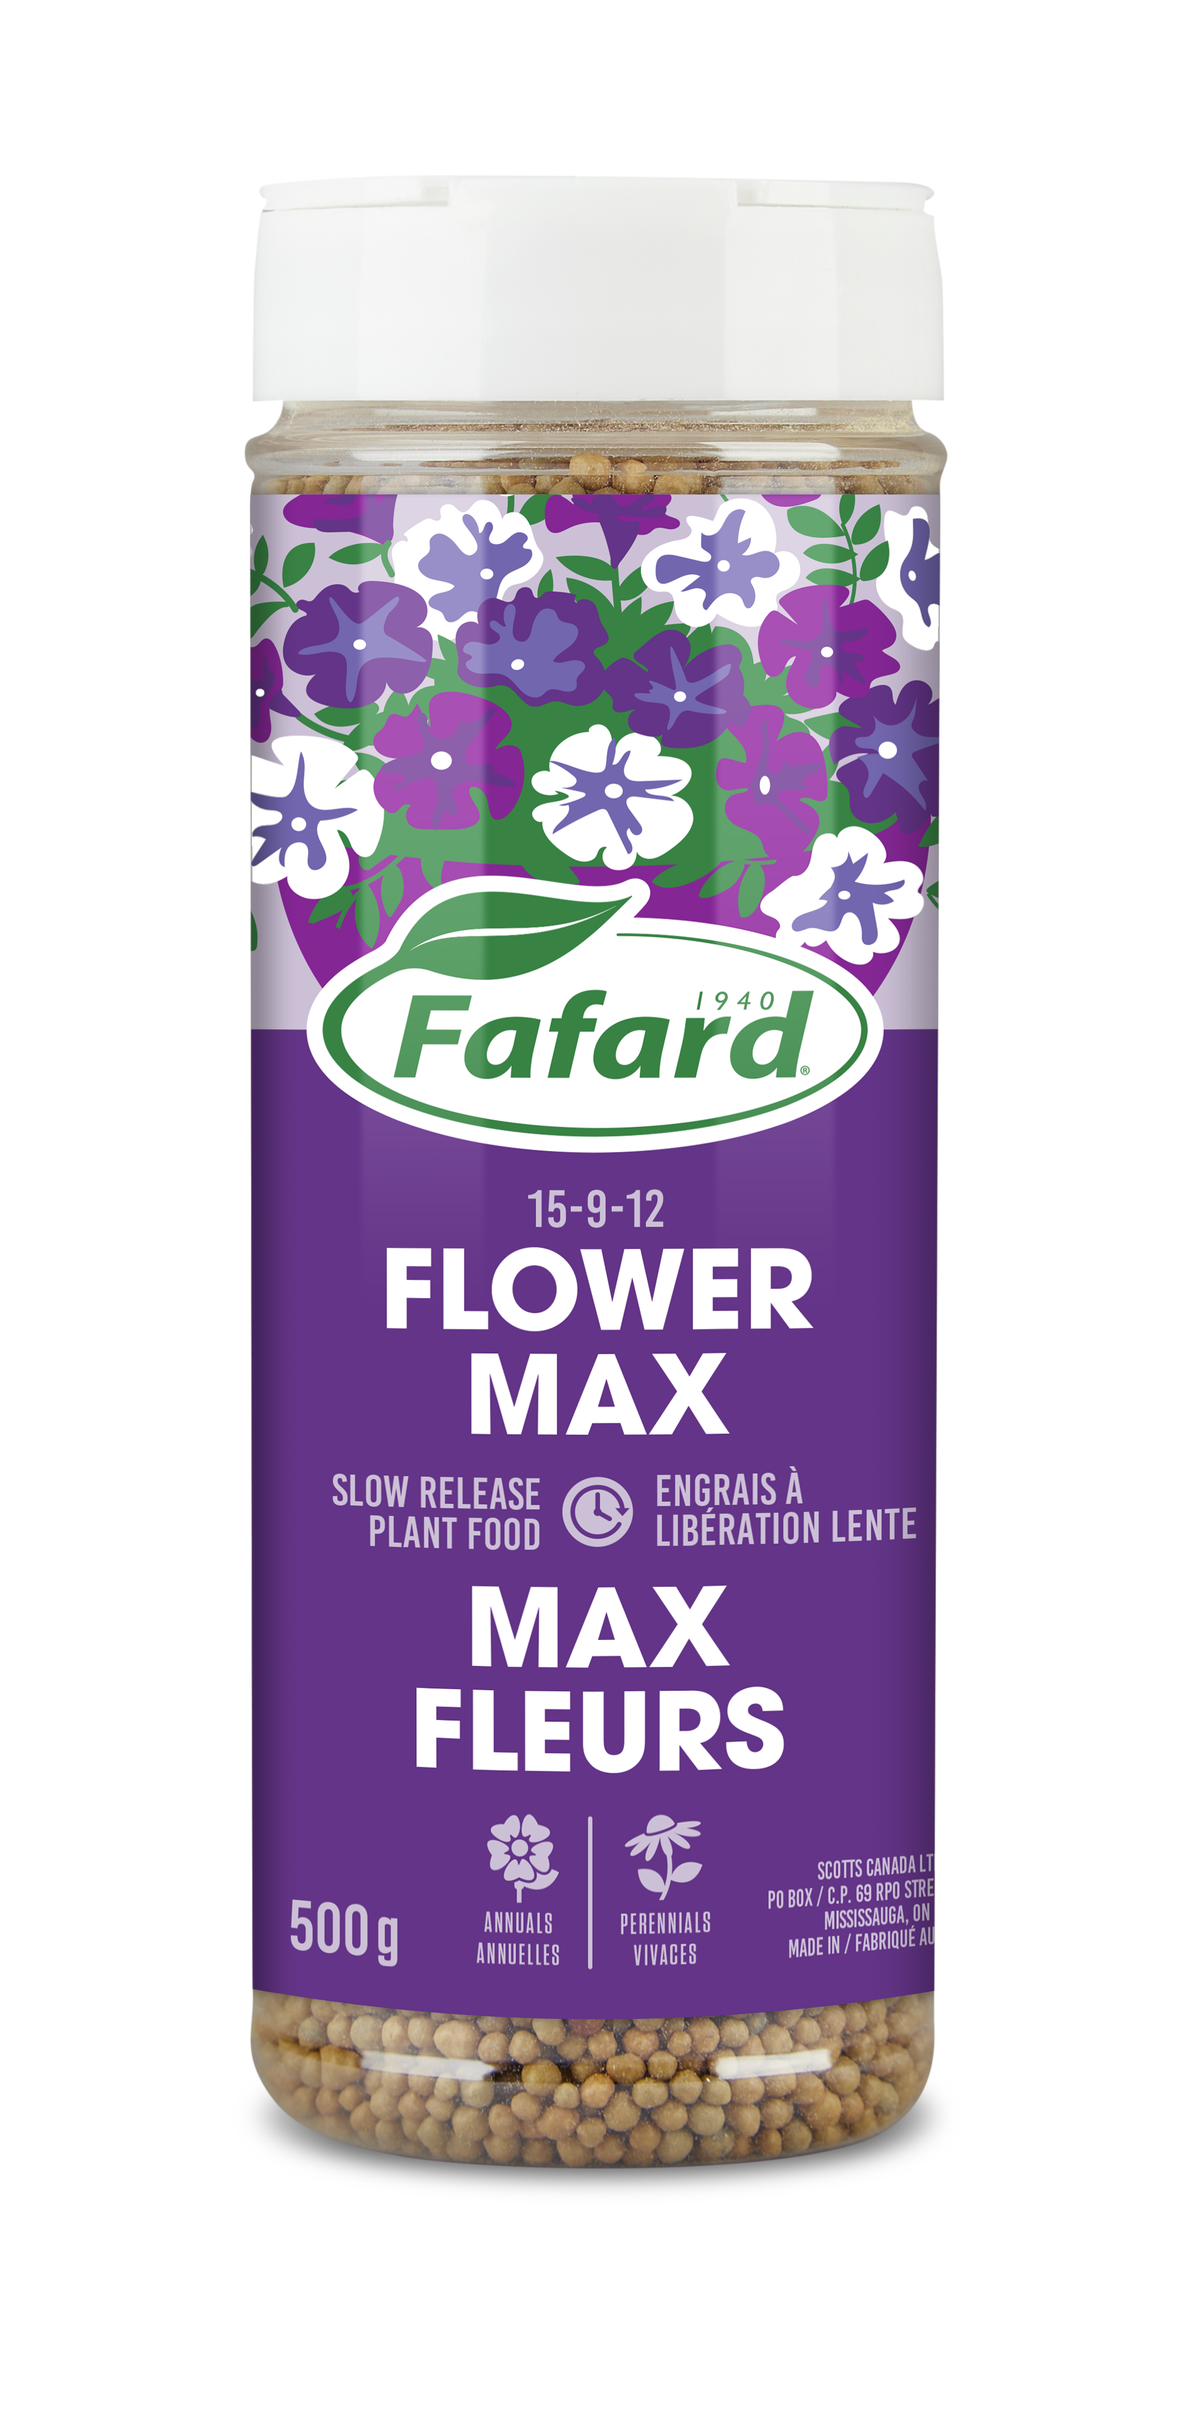 Engrais max fleurs Fafard 15-9-12